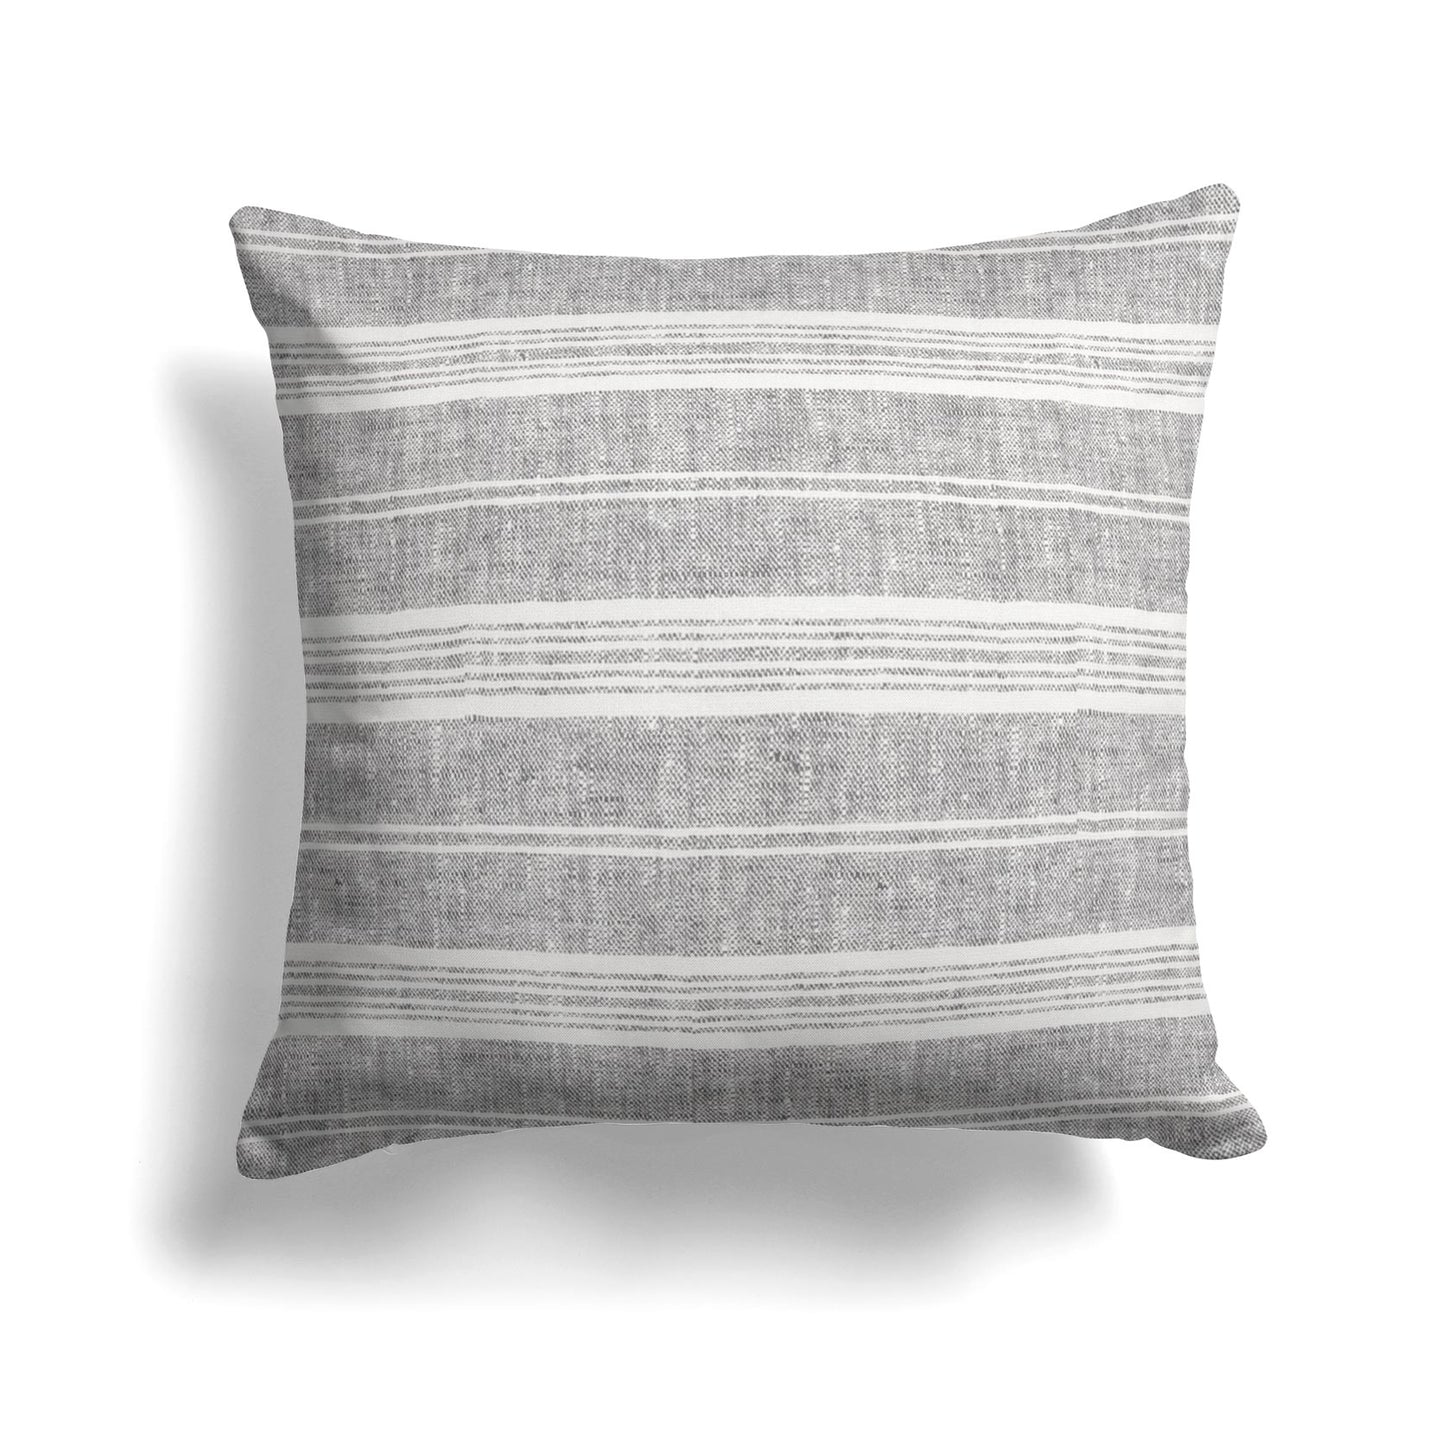 Multistripe Linen Pillow Cover in Graphite